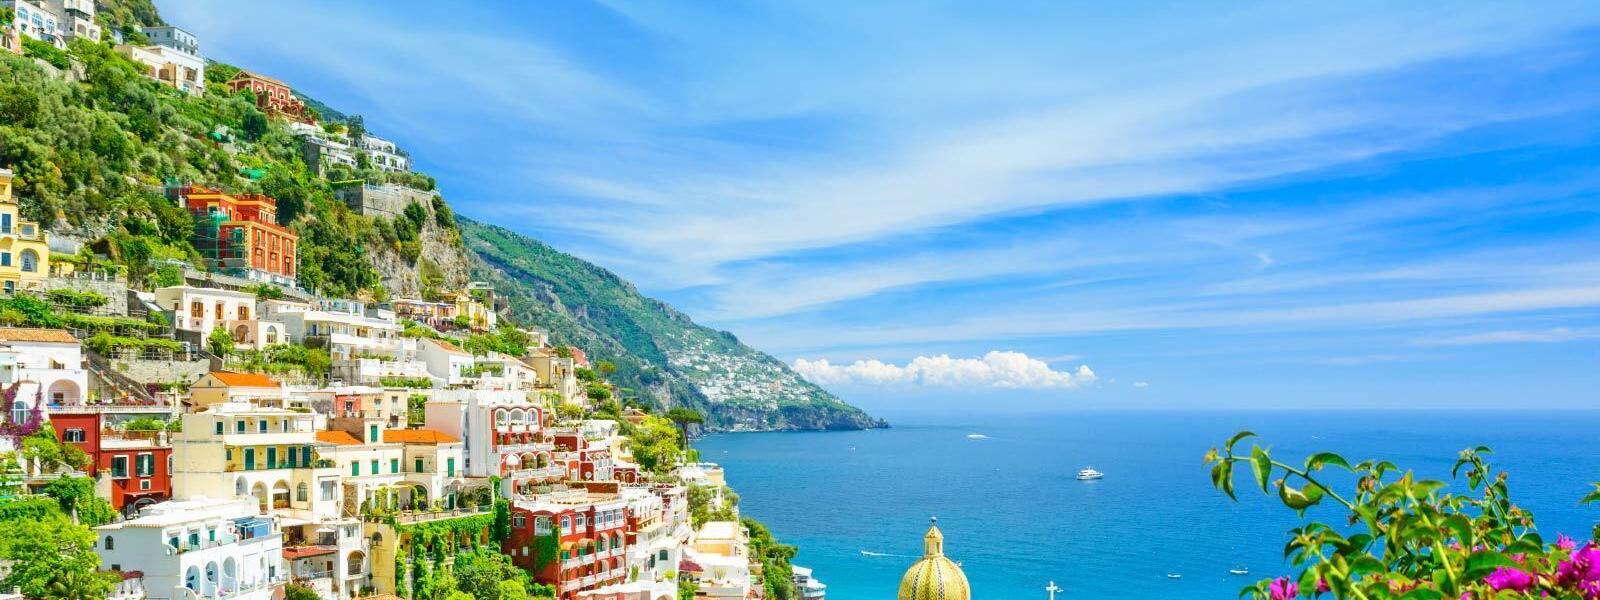 Ferienhäuser und Fewos in La Spezia: Badespaß und viel Abwechslung am Meer - e-domizil